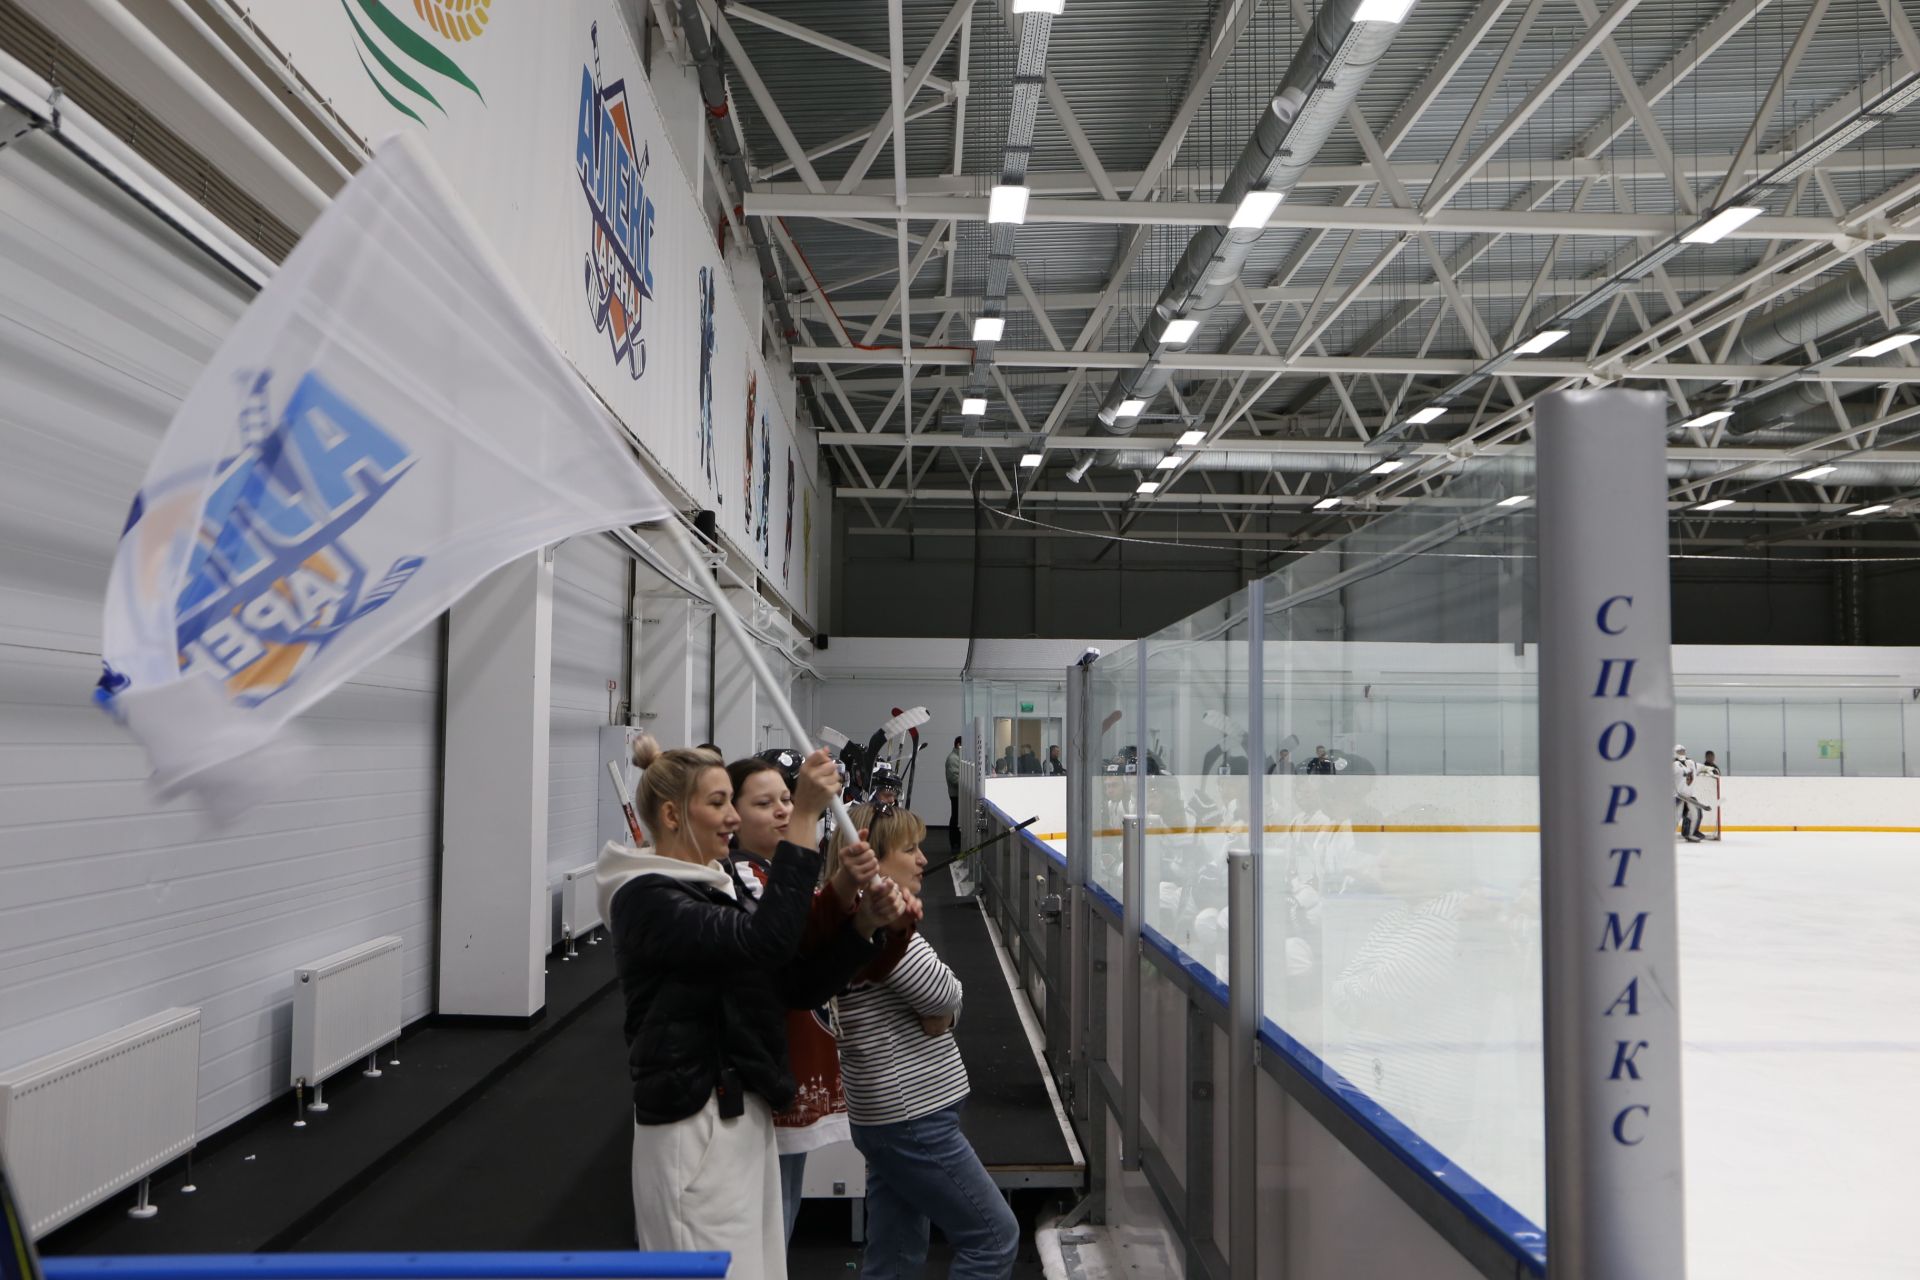 Алексеевцы завоевали призовое место на Кубке первенства РТ по хоккею